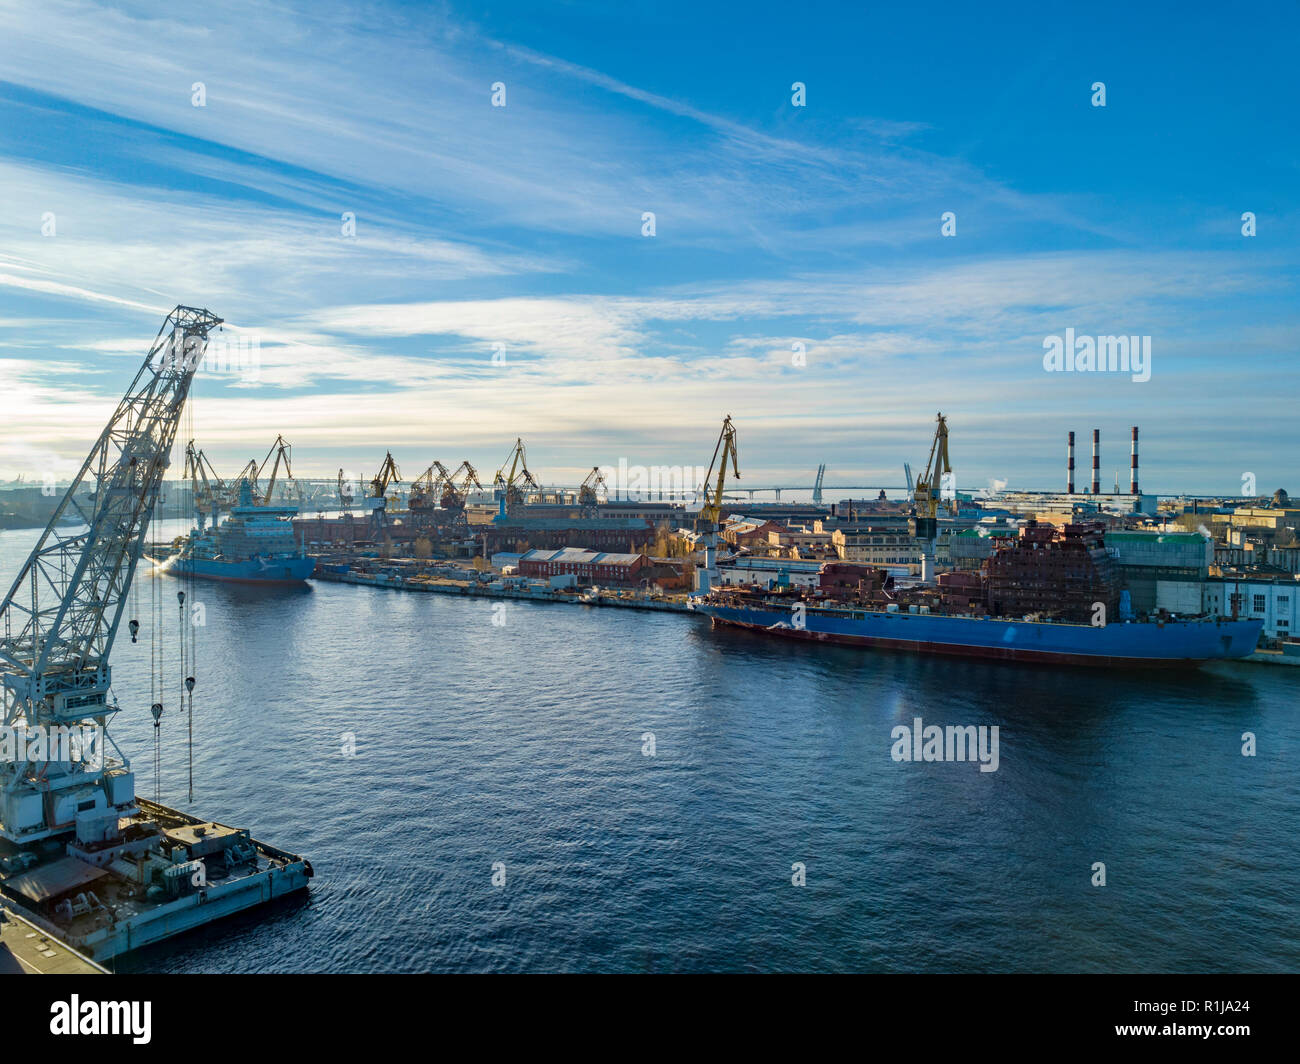 Vue aérienne ; drone de port avec silhouettes sur l'horizon ; paysage urbain industriel par beau temps avec ciel bleu ; le processus de la réparation des navires, l Banque D'Images